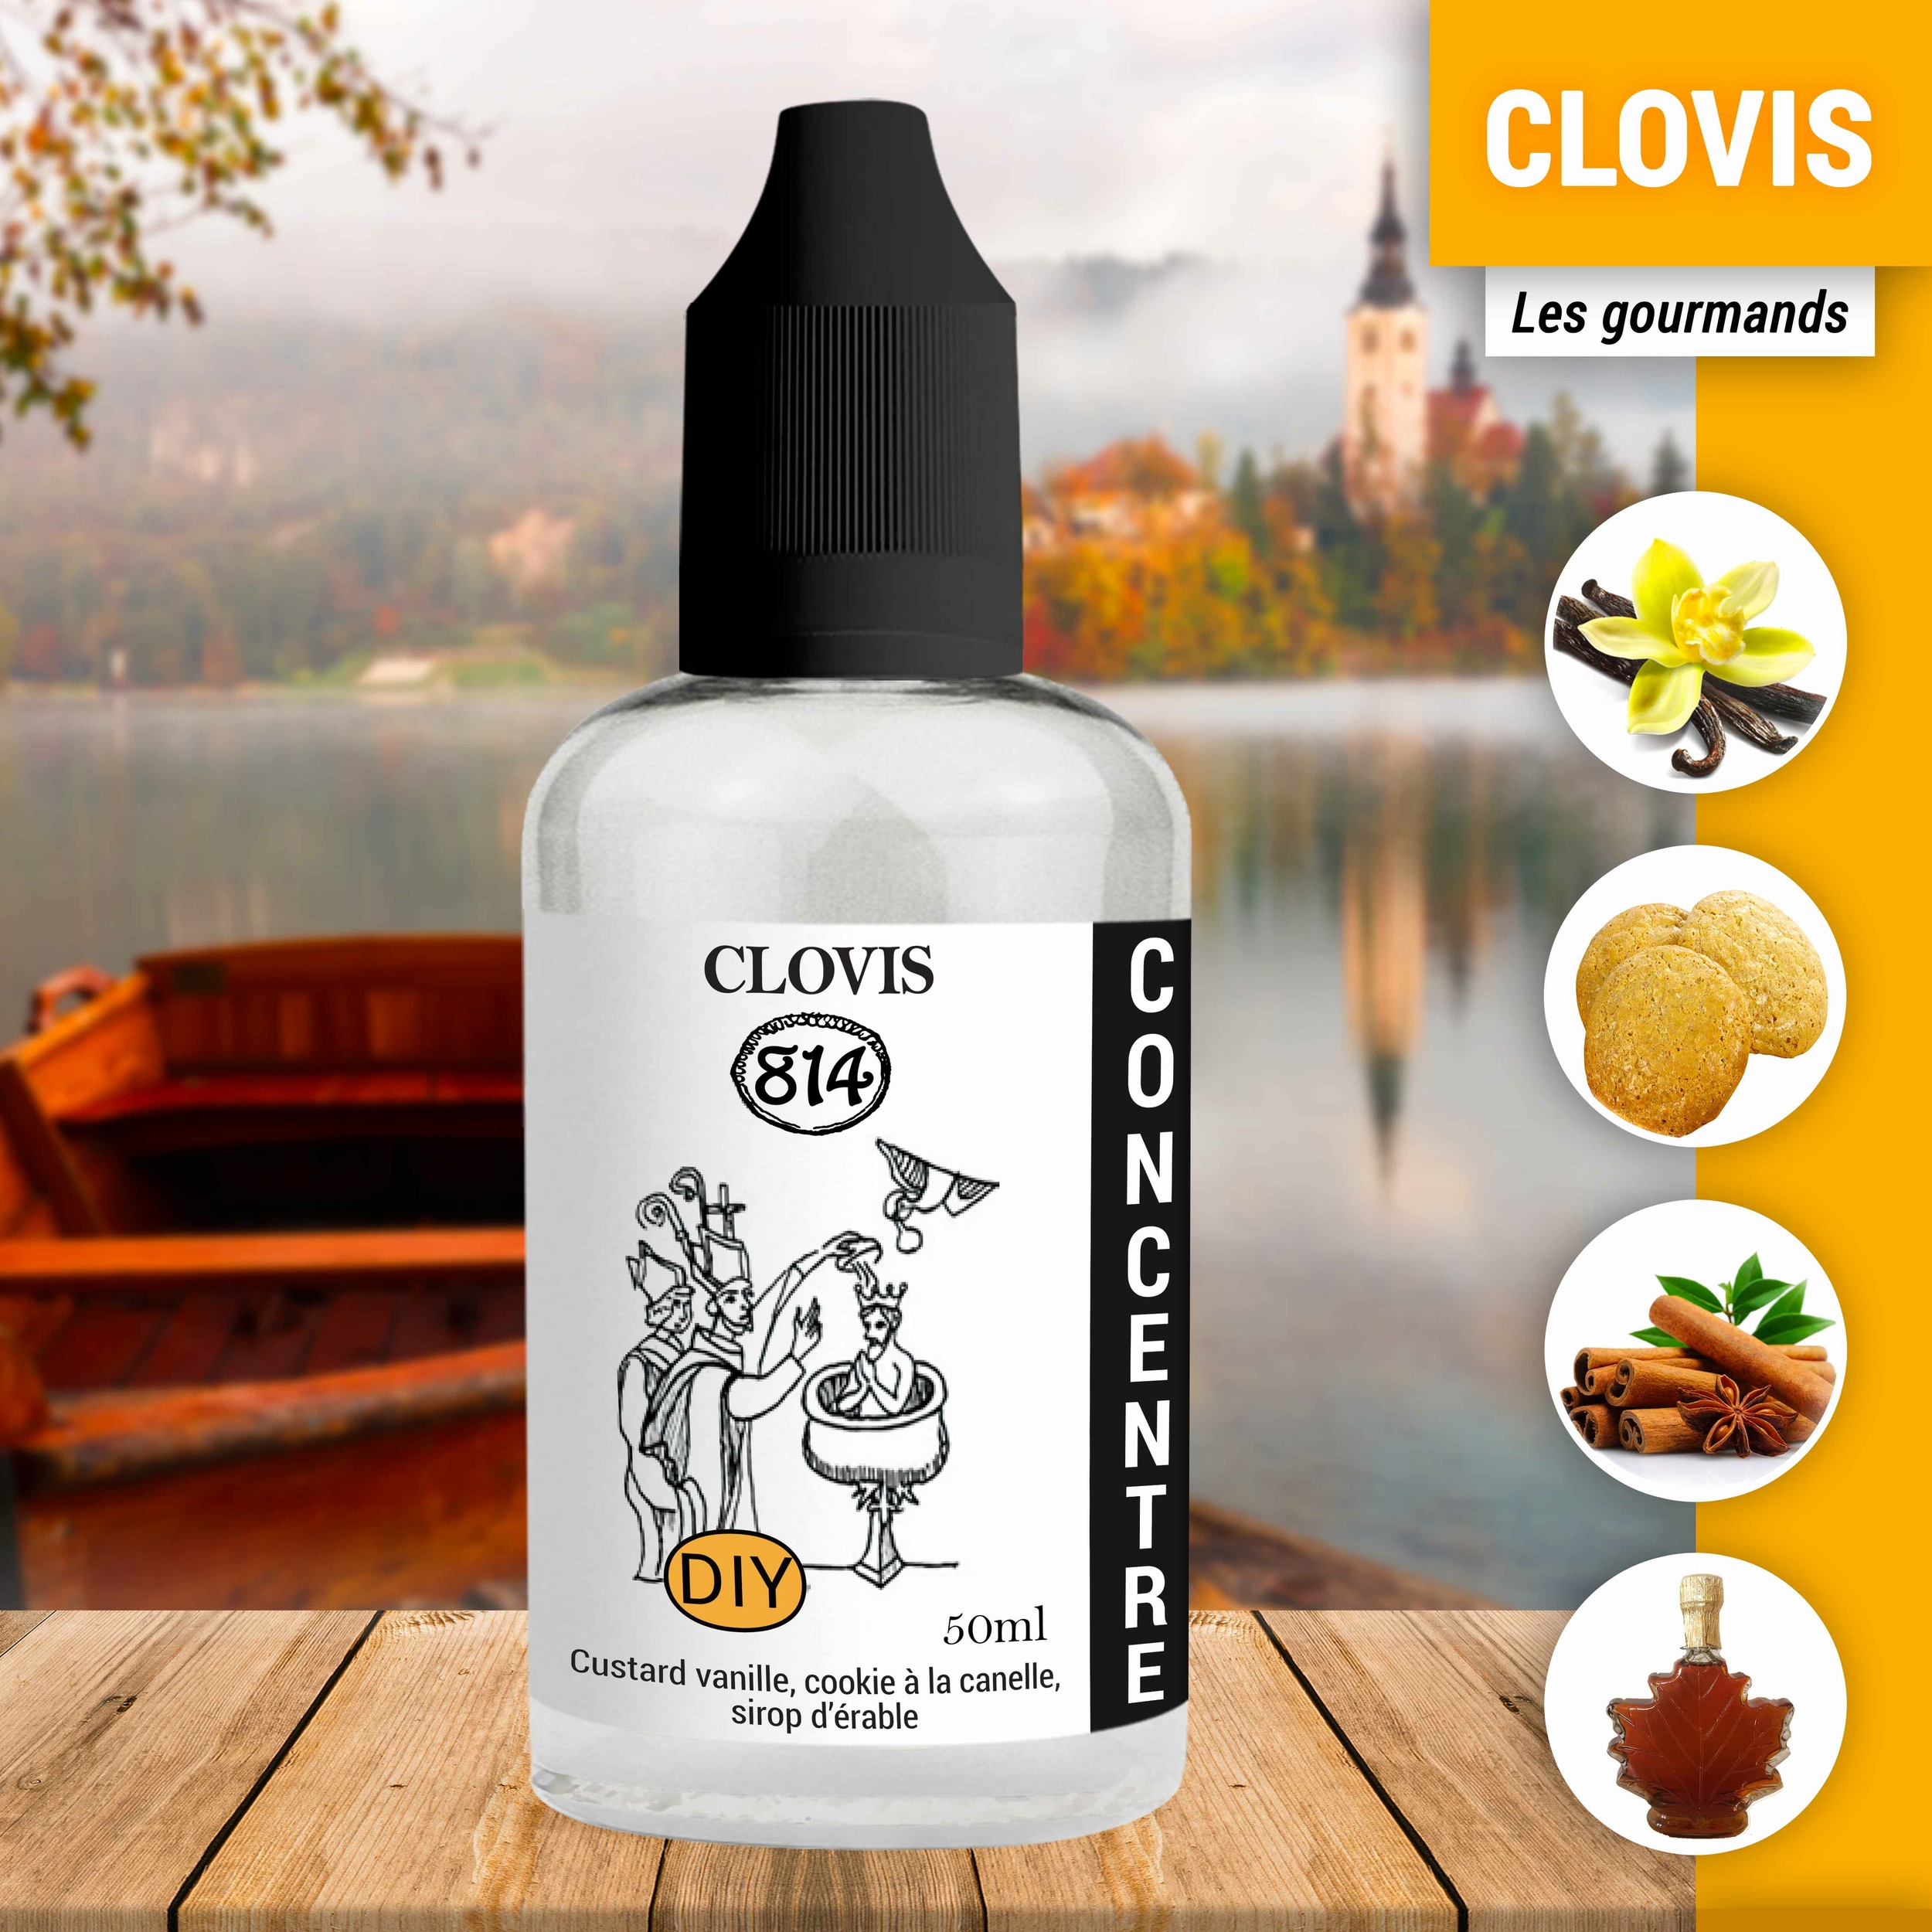 Clovis_Gourmands_HD